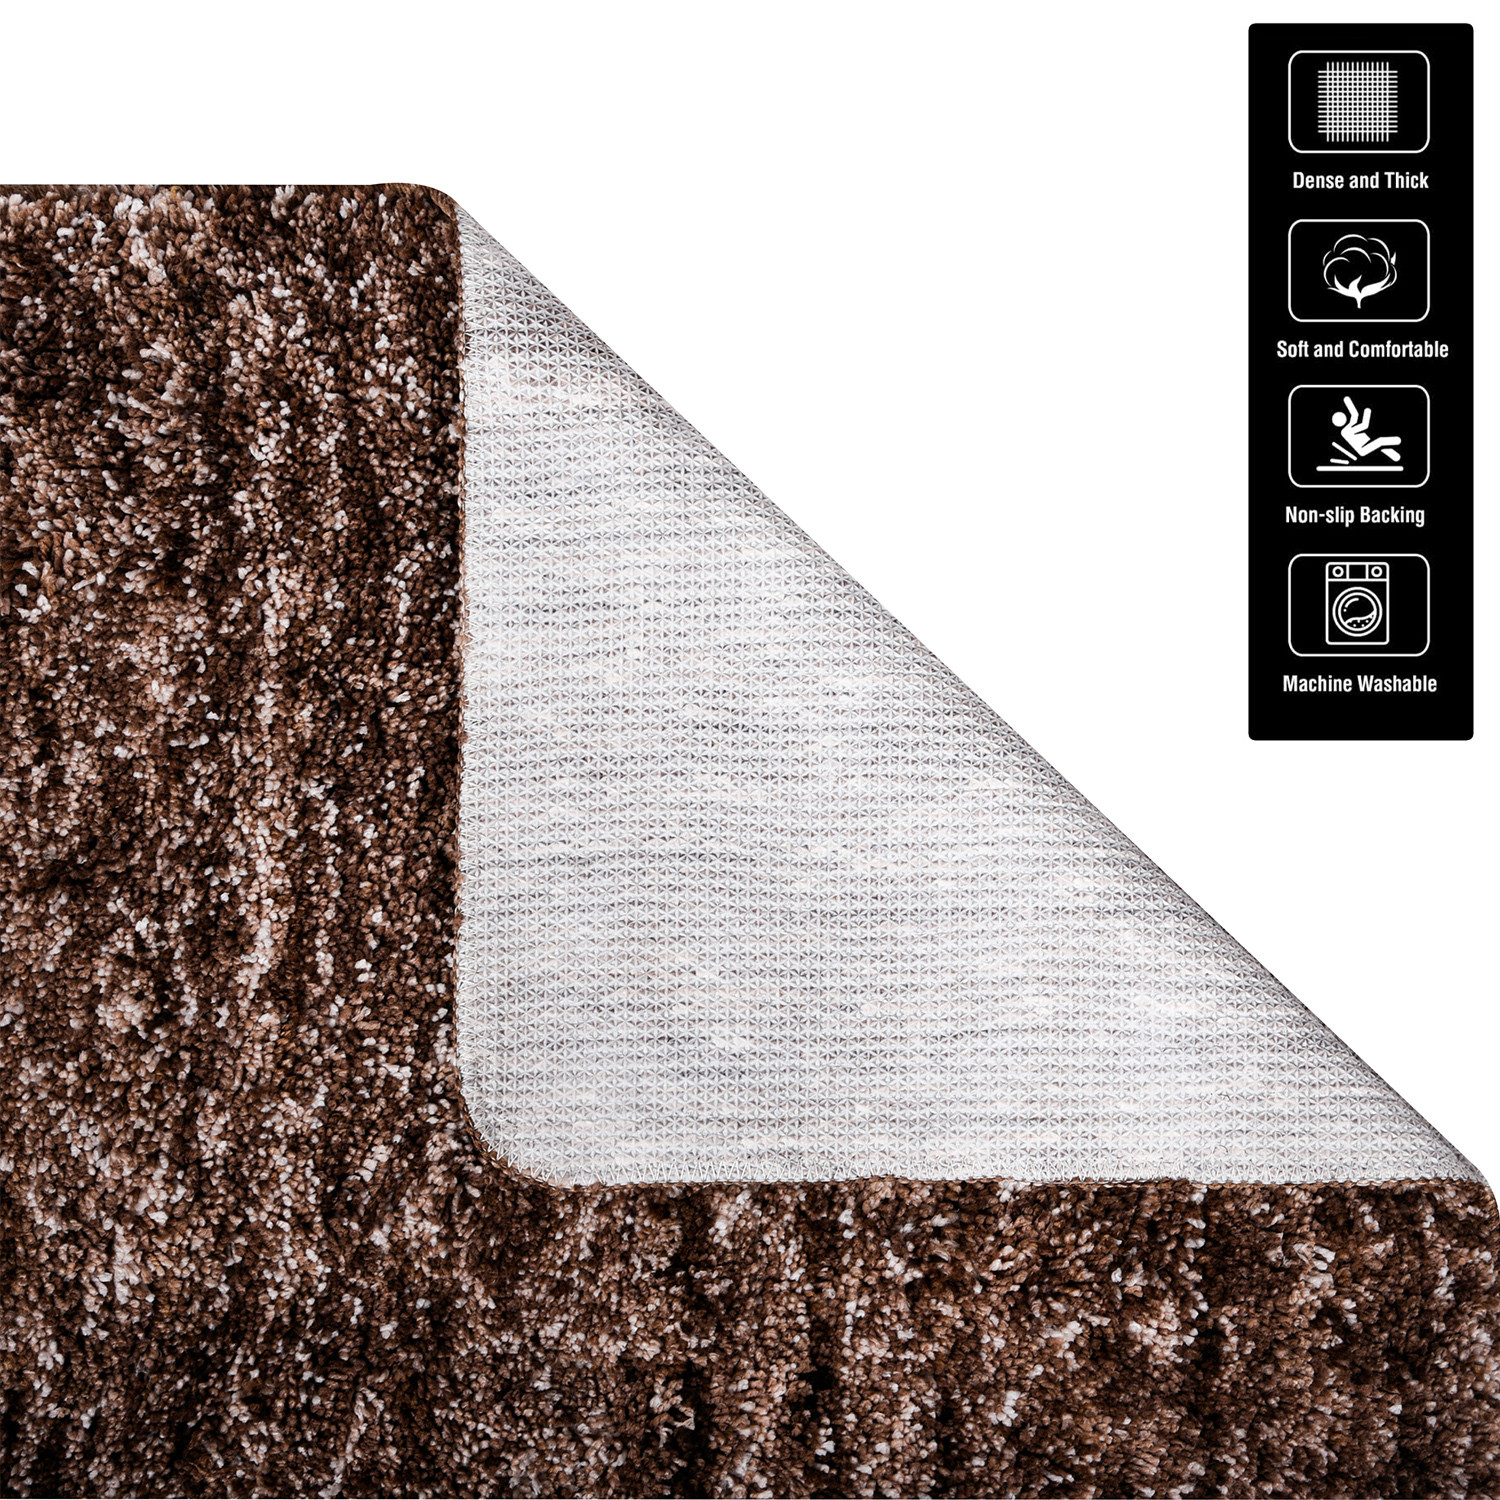 Kuber Industries Carpet | Shaggy Carpet for Living Room | Fluffy Carpet for Bedroom | Lexus Home Decor Carpet | Floor Carpet Rug | Non-Slip Bedside Rug | 3x5 Feet | Brown